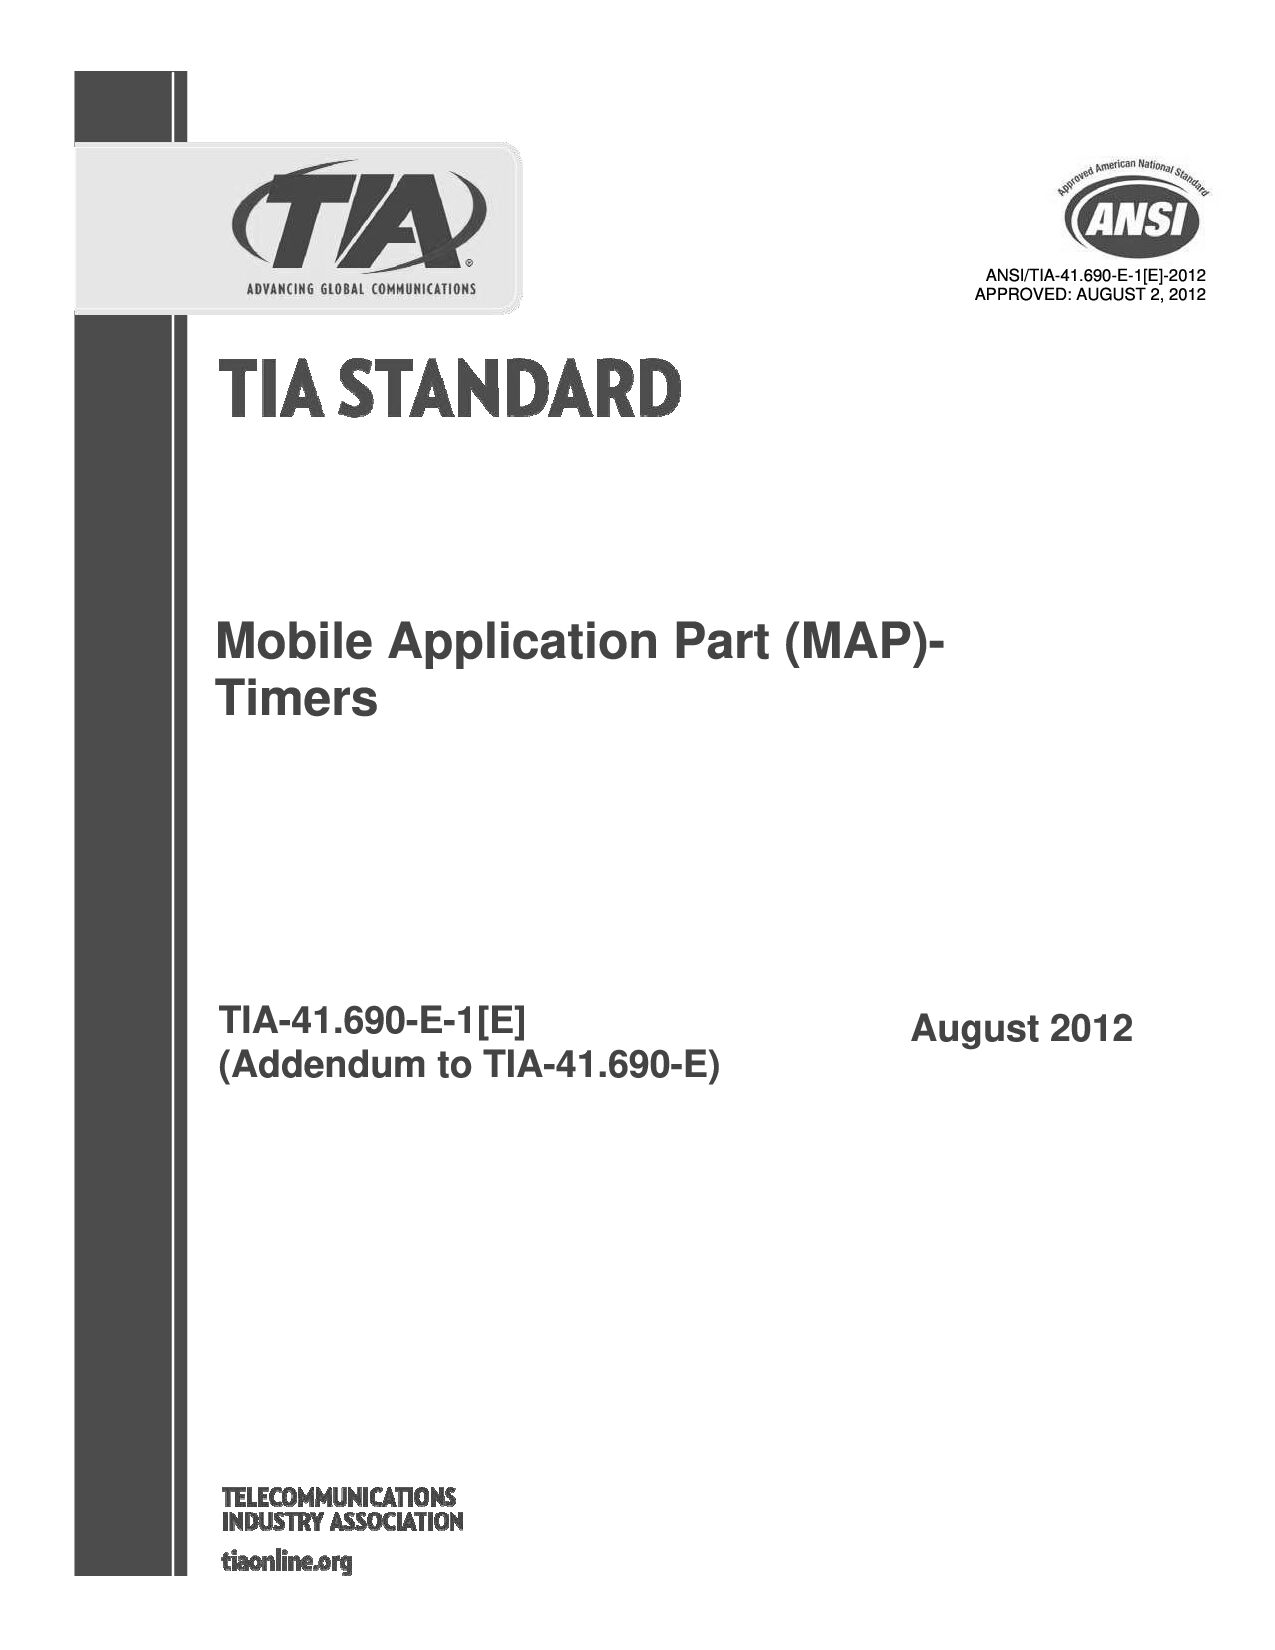 ANSI/TIA-41.690-E-1[E]-2012